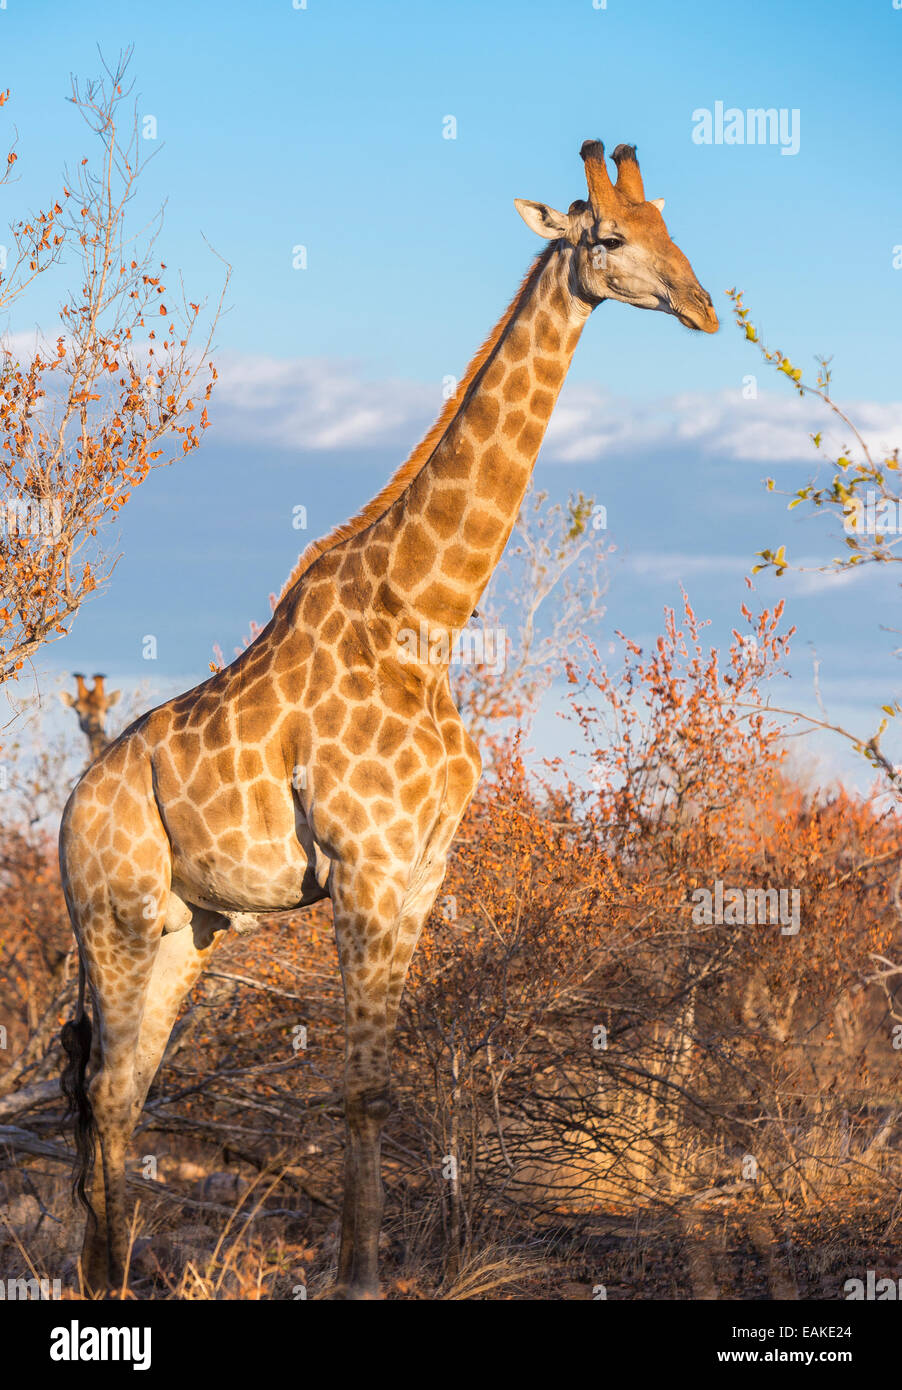 Le parc national Kruger, AFRIQUE DU SUD - Girafe Banque D'Images